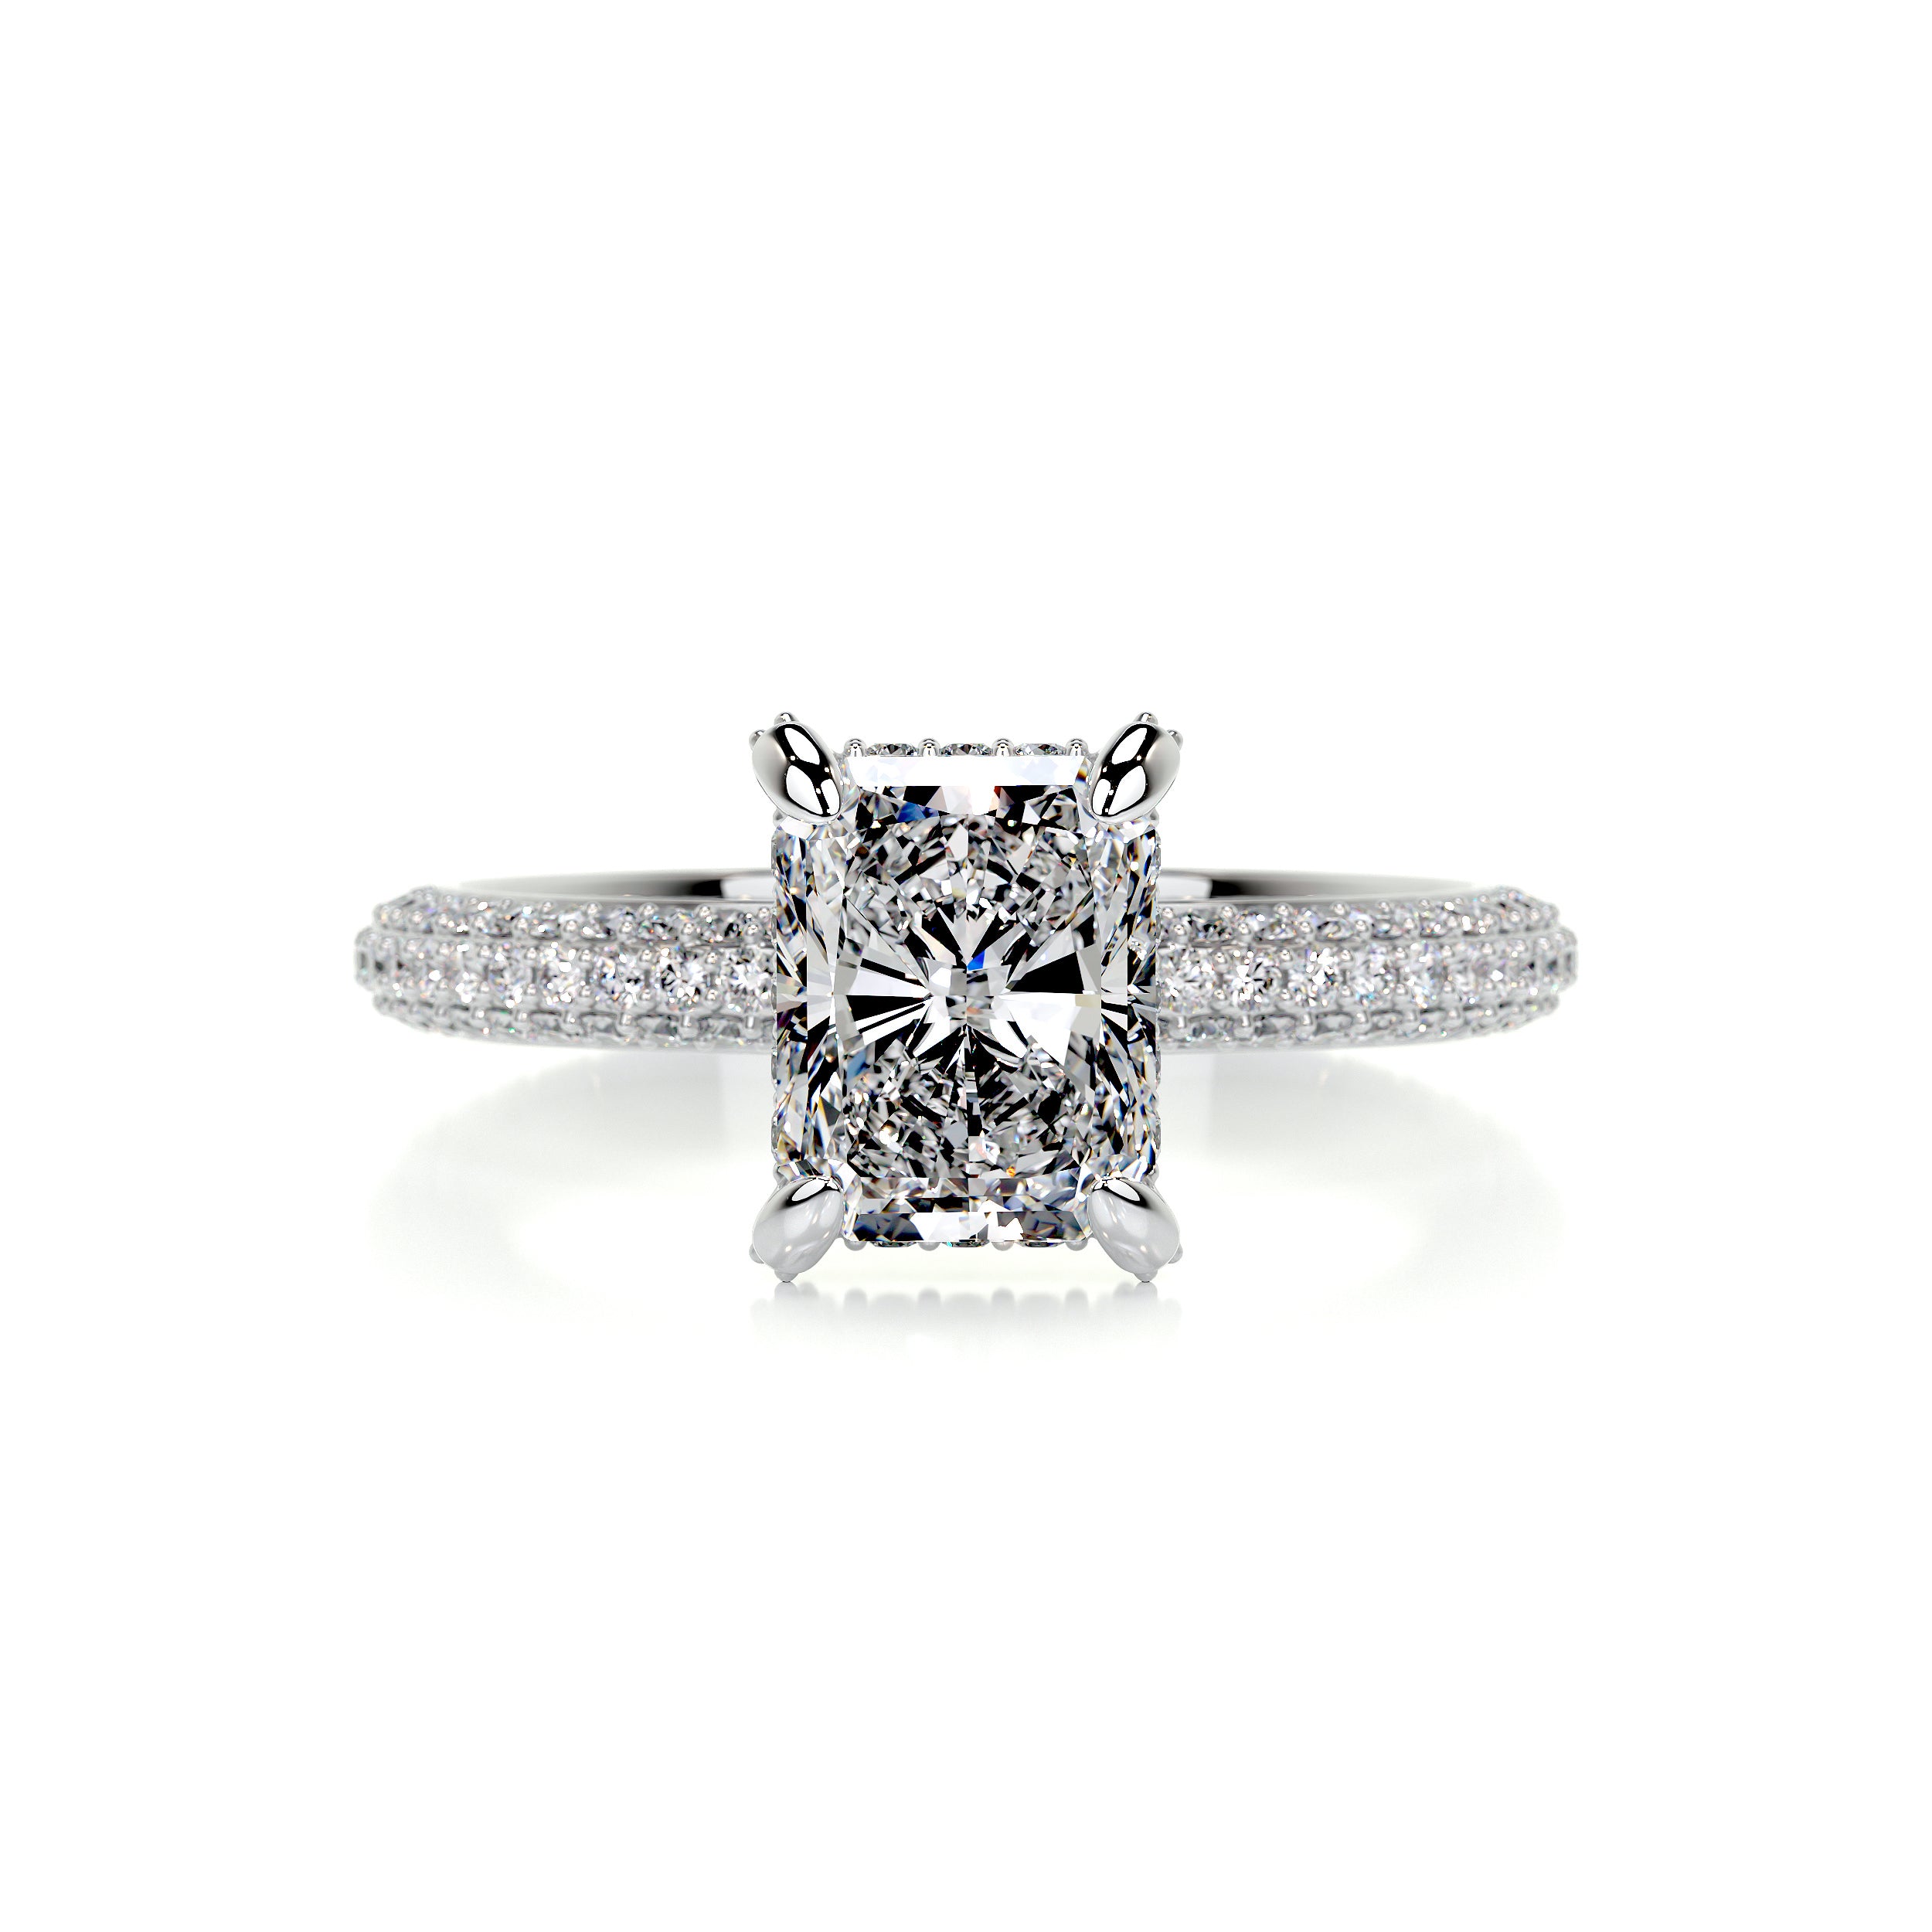 Milly Diamond Engagement Ring   (2.25 Carat) -14K White Gold